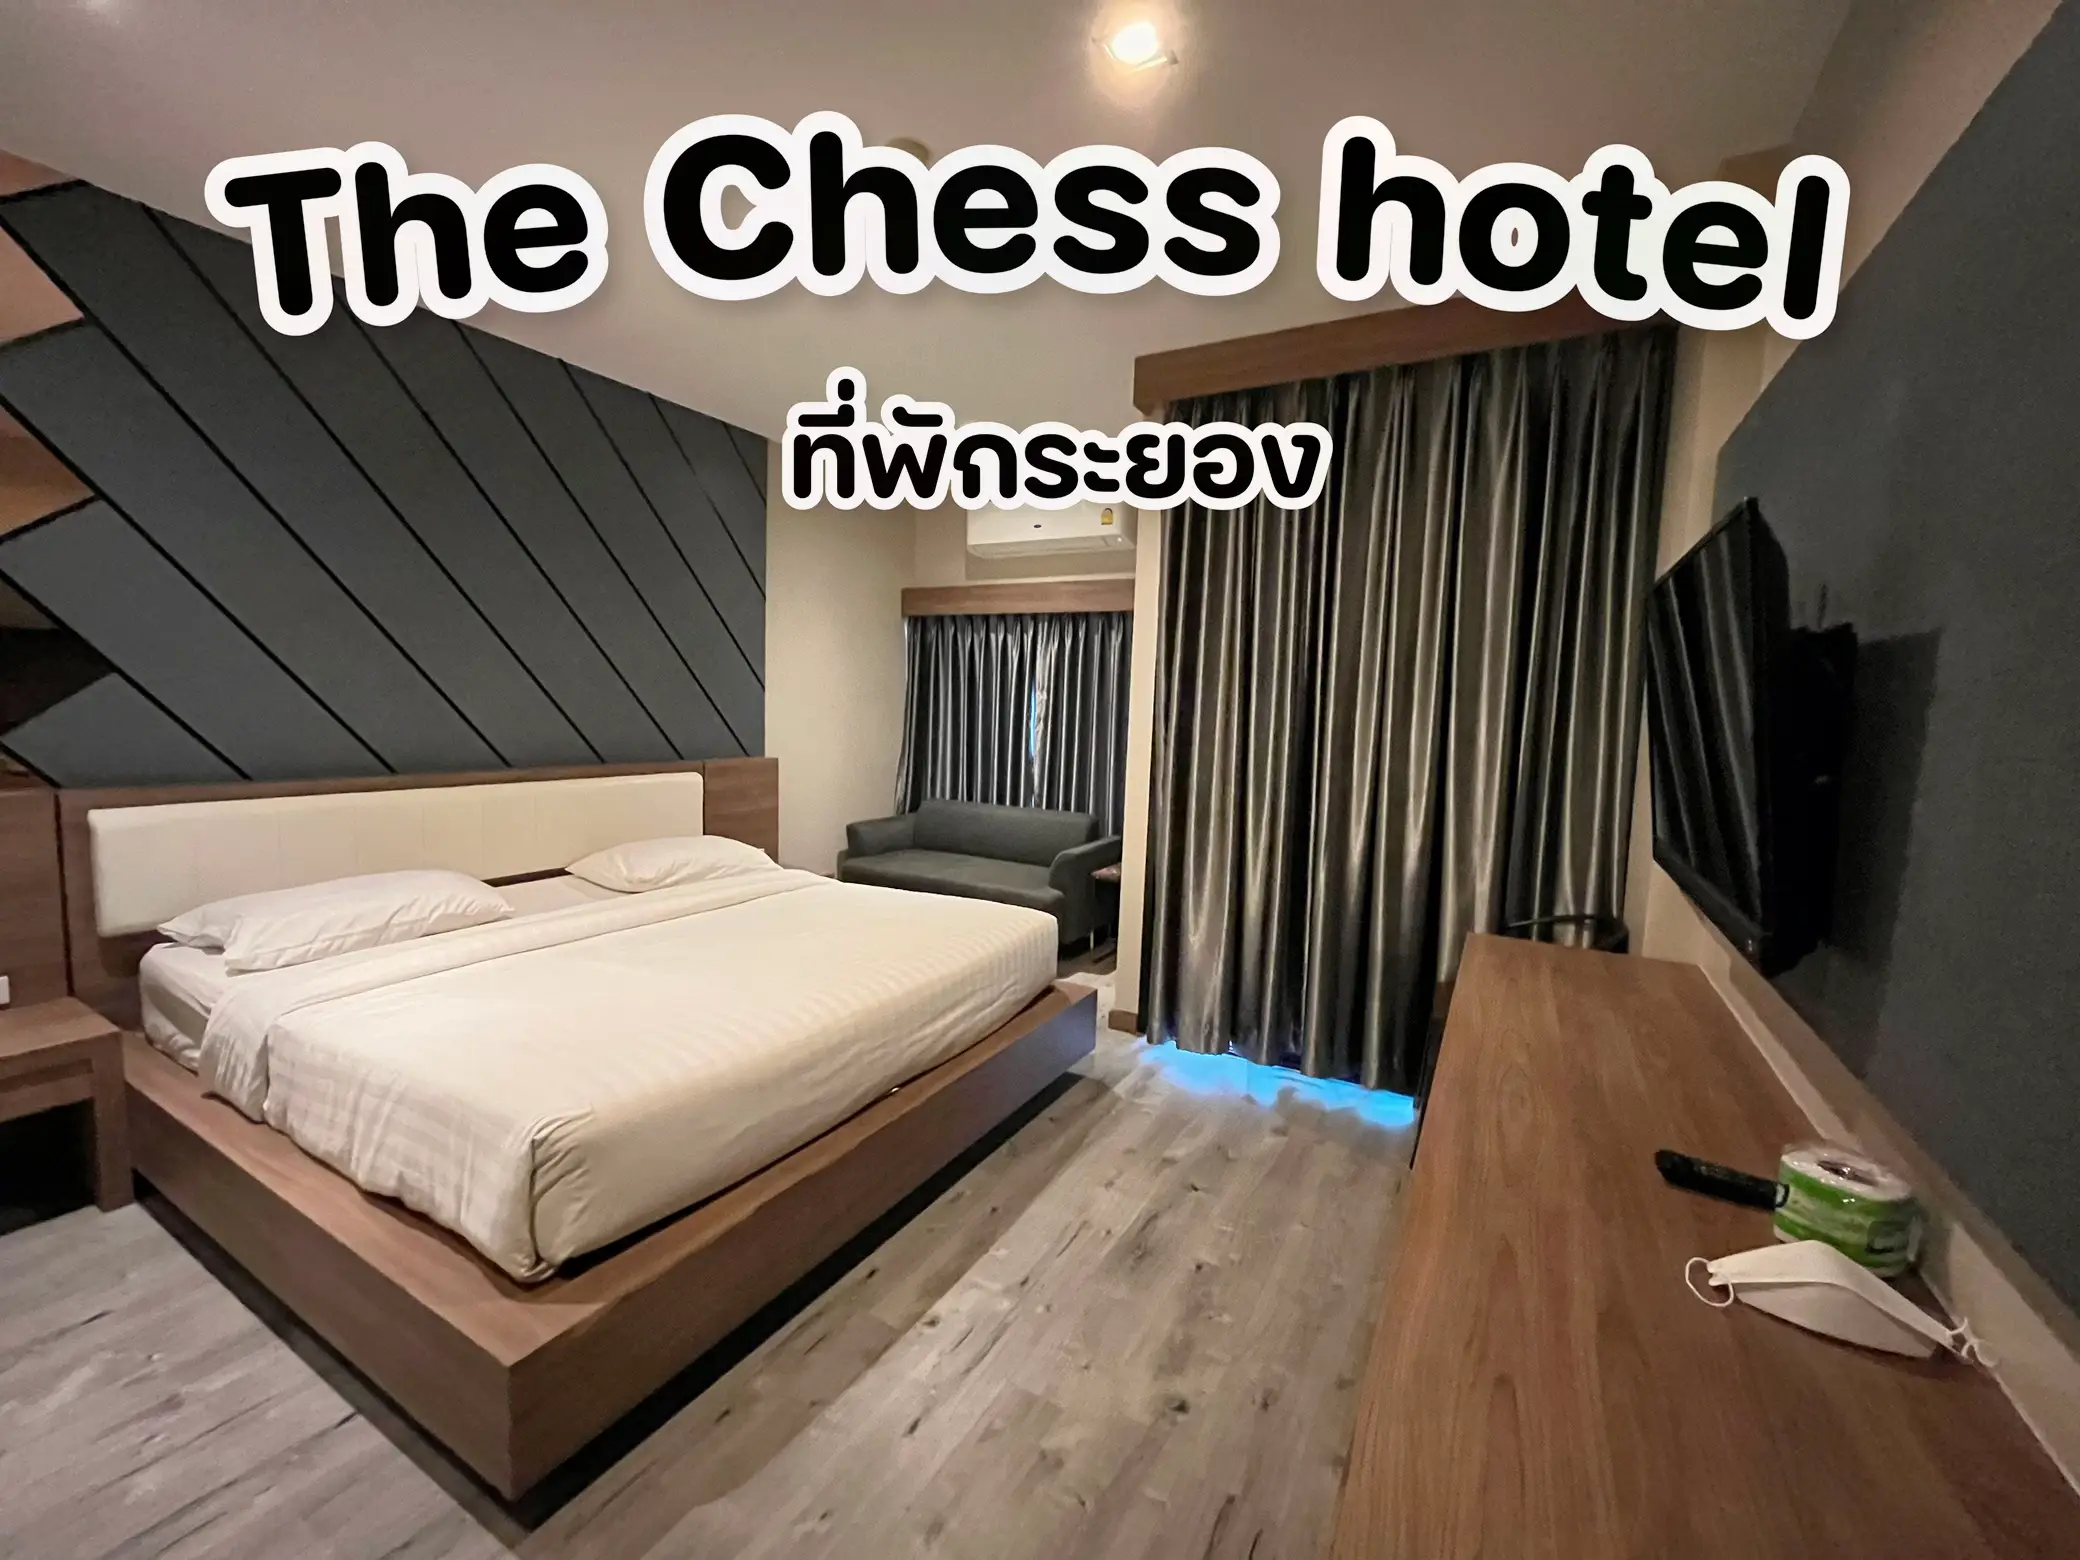 ที่พักระยอง The Chess hotel หกร้อยบาท มีทอน!!!!, Gallery posted by Janjao  Pakchany